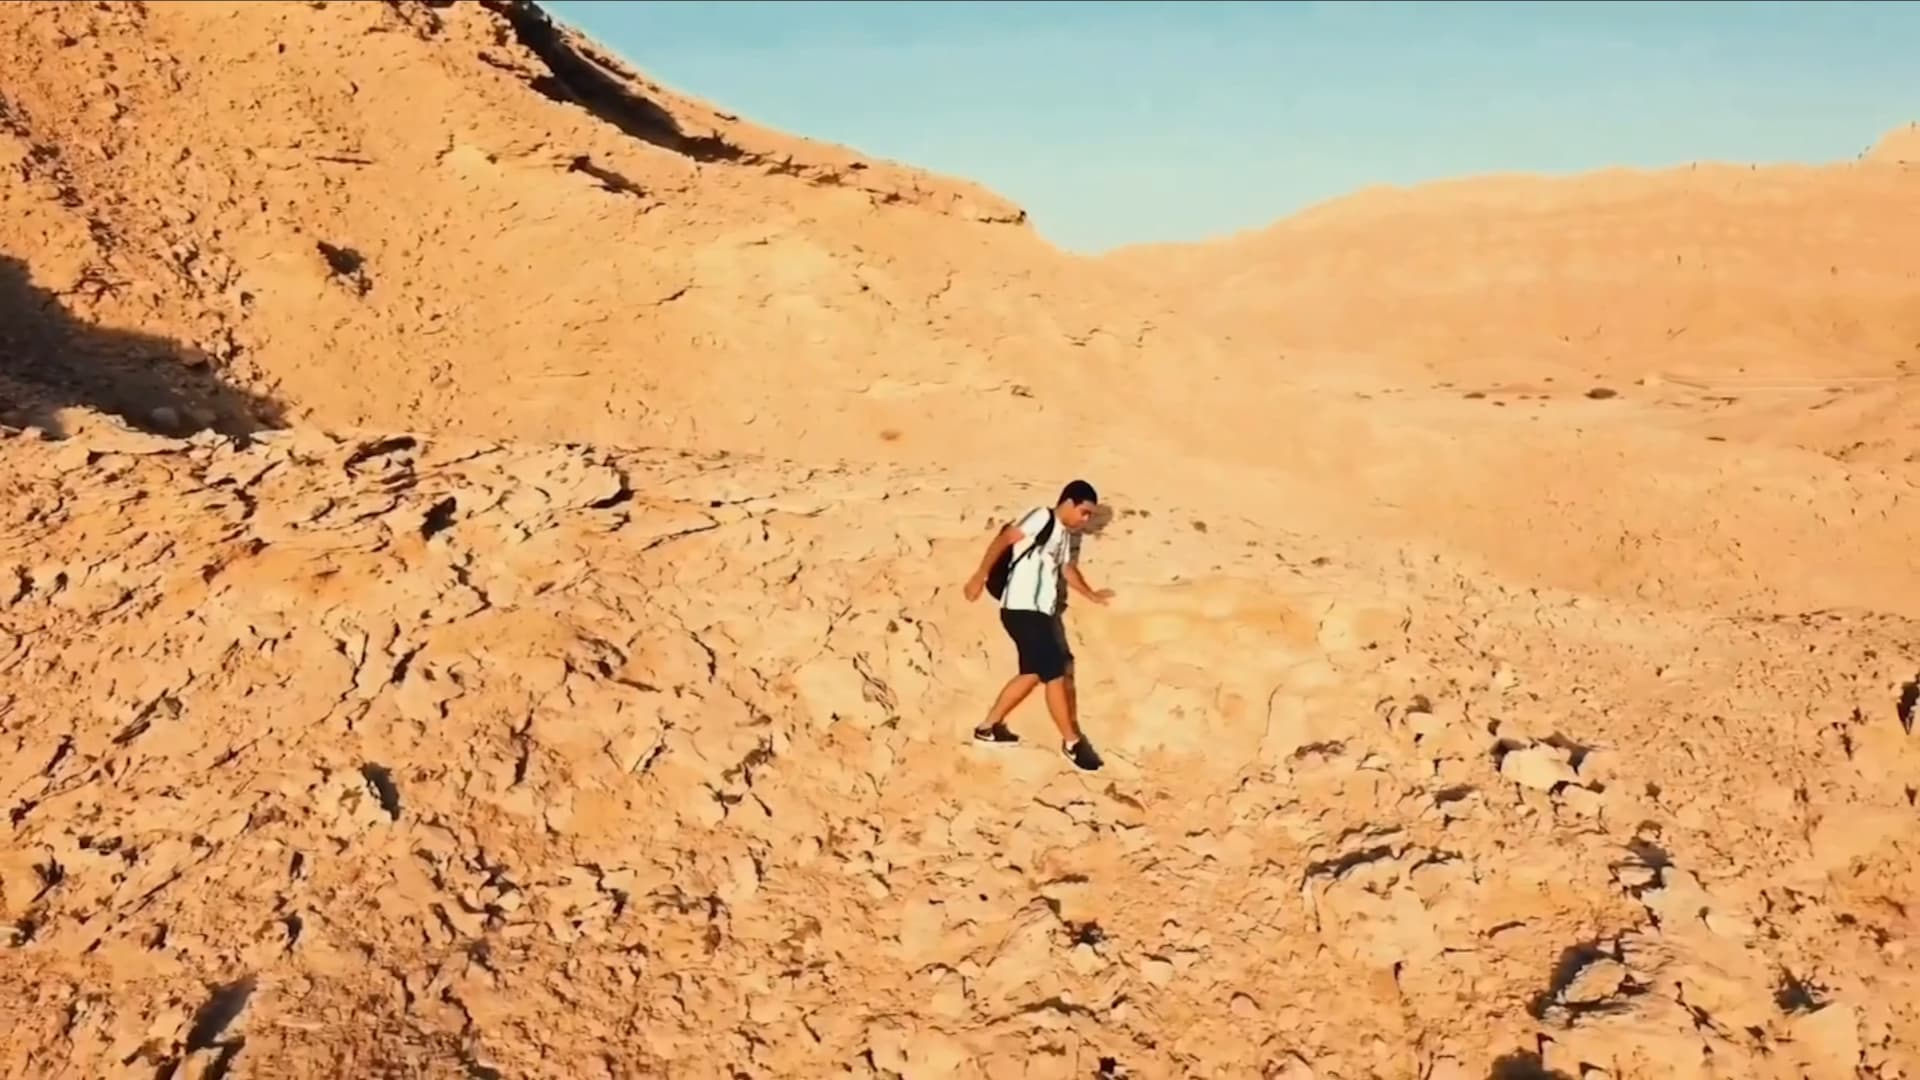 شاهد كيف تسلق مغامر إماراتي المسار شديد الانحدار لأعلى قمة في أبوظبي